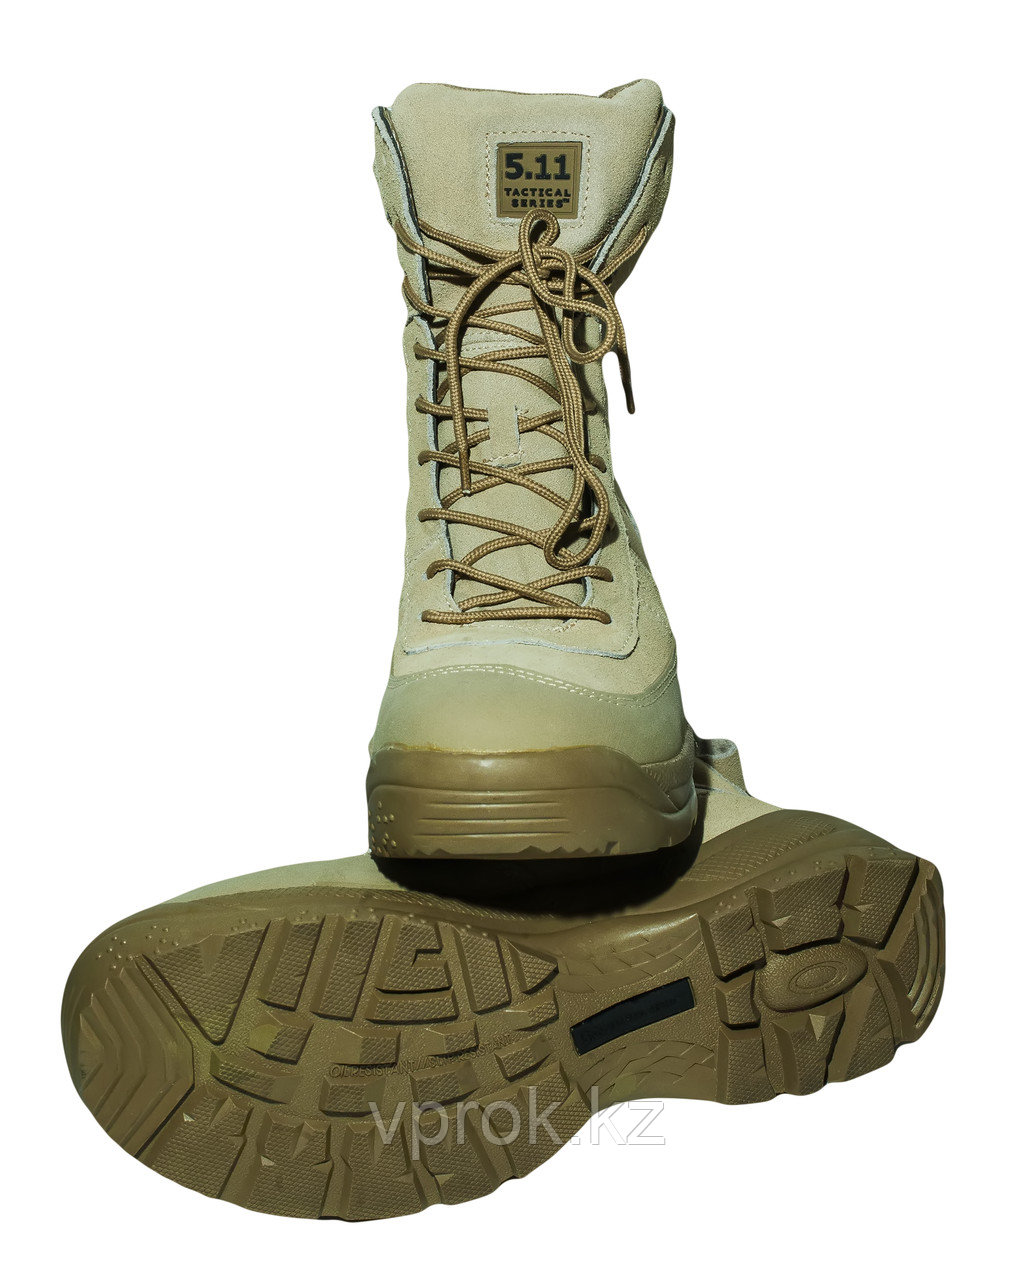 Тактические ботинки 5.11 (размеры 42-45) беж